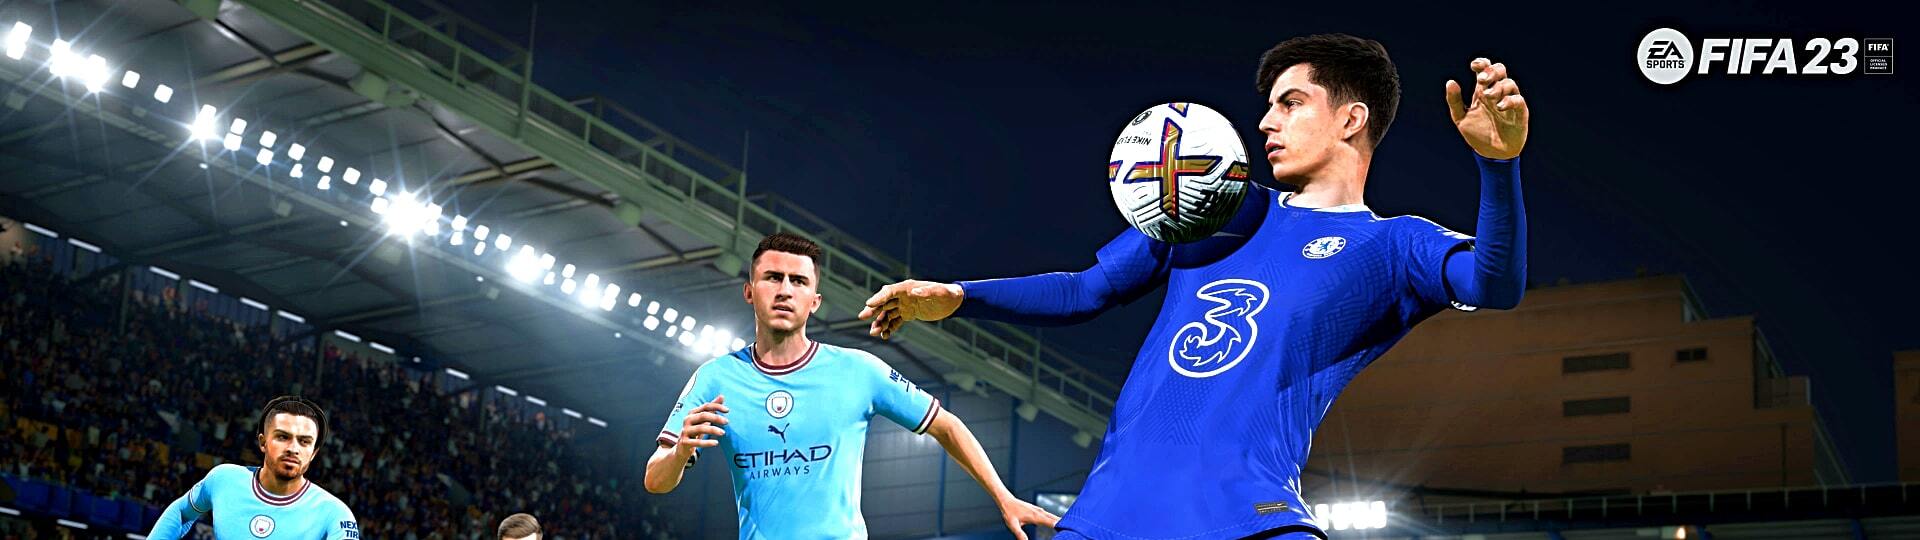 EA omylem prozradila herní módy pro mistrovství světa ve FIFA 23 | Novinky